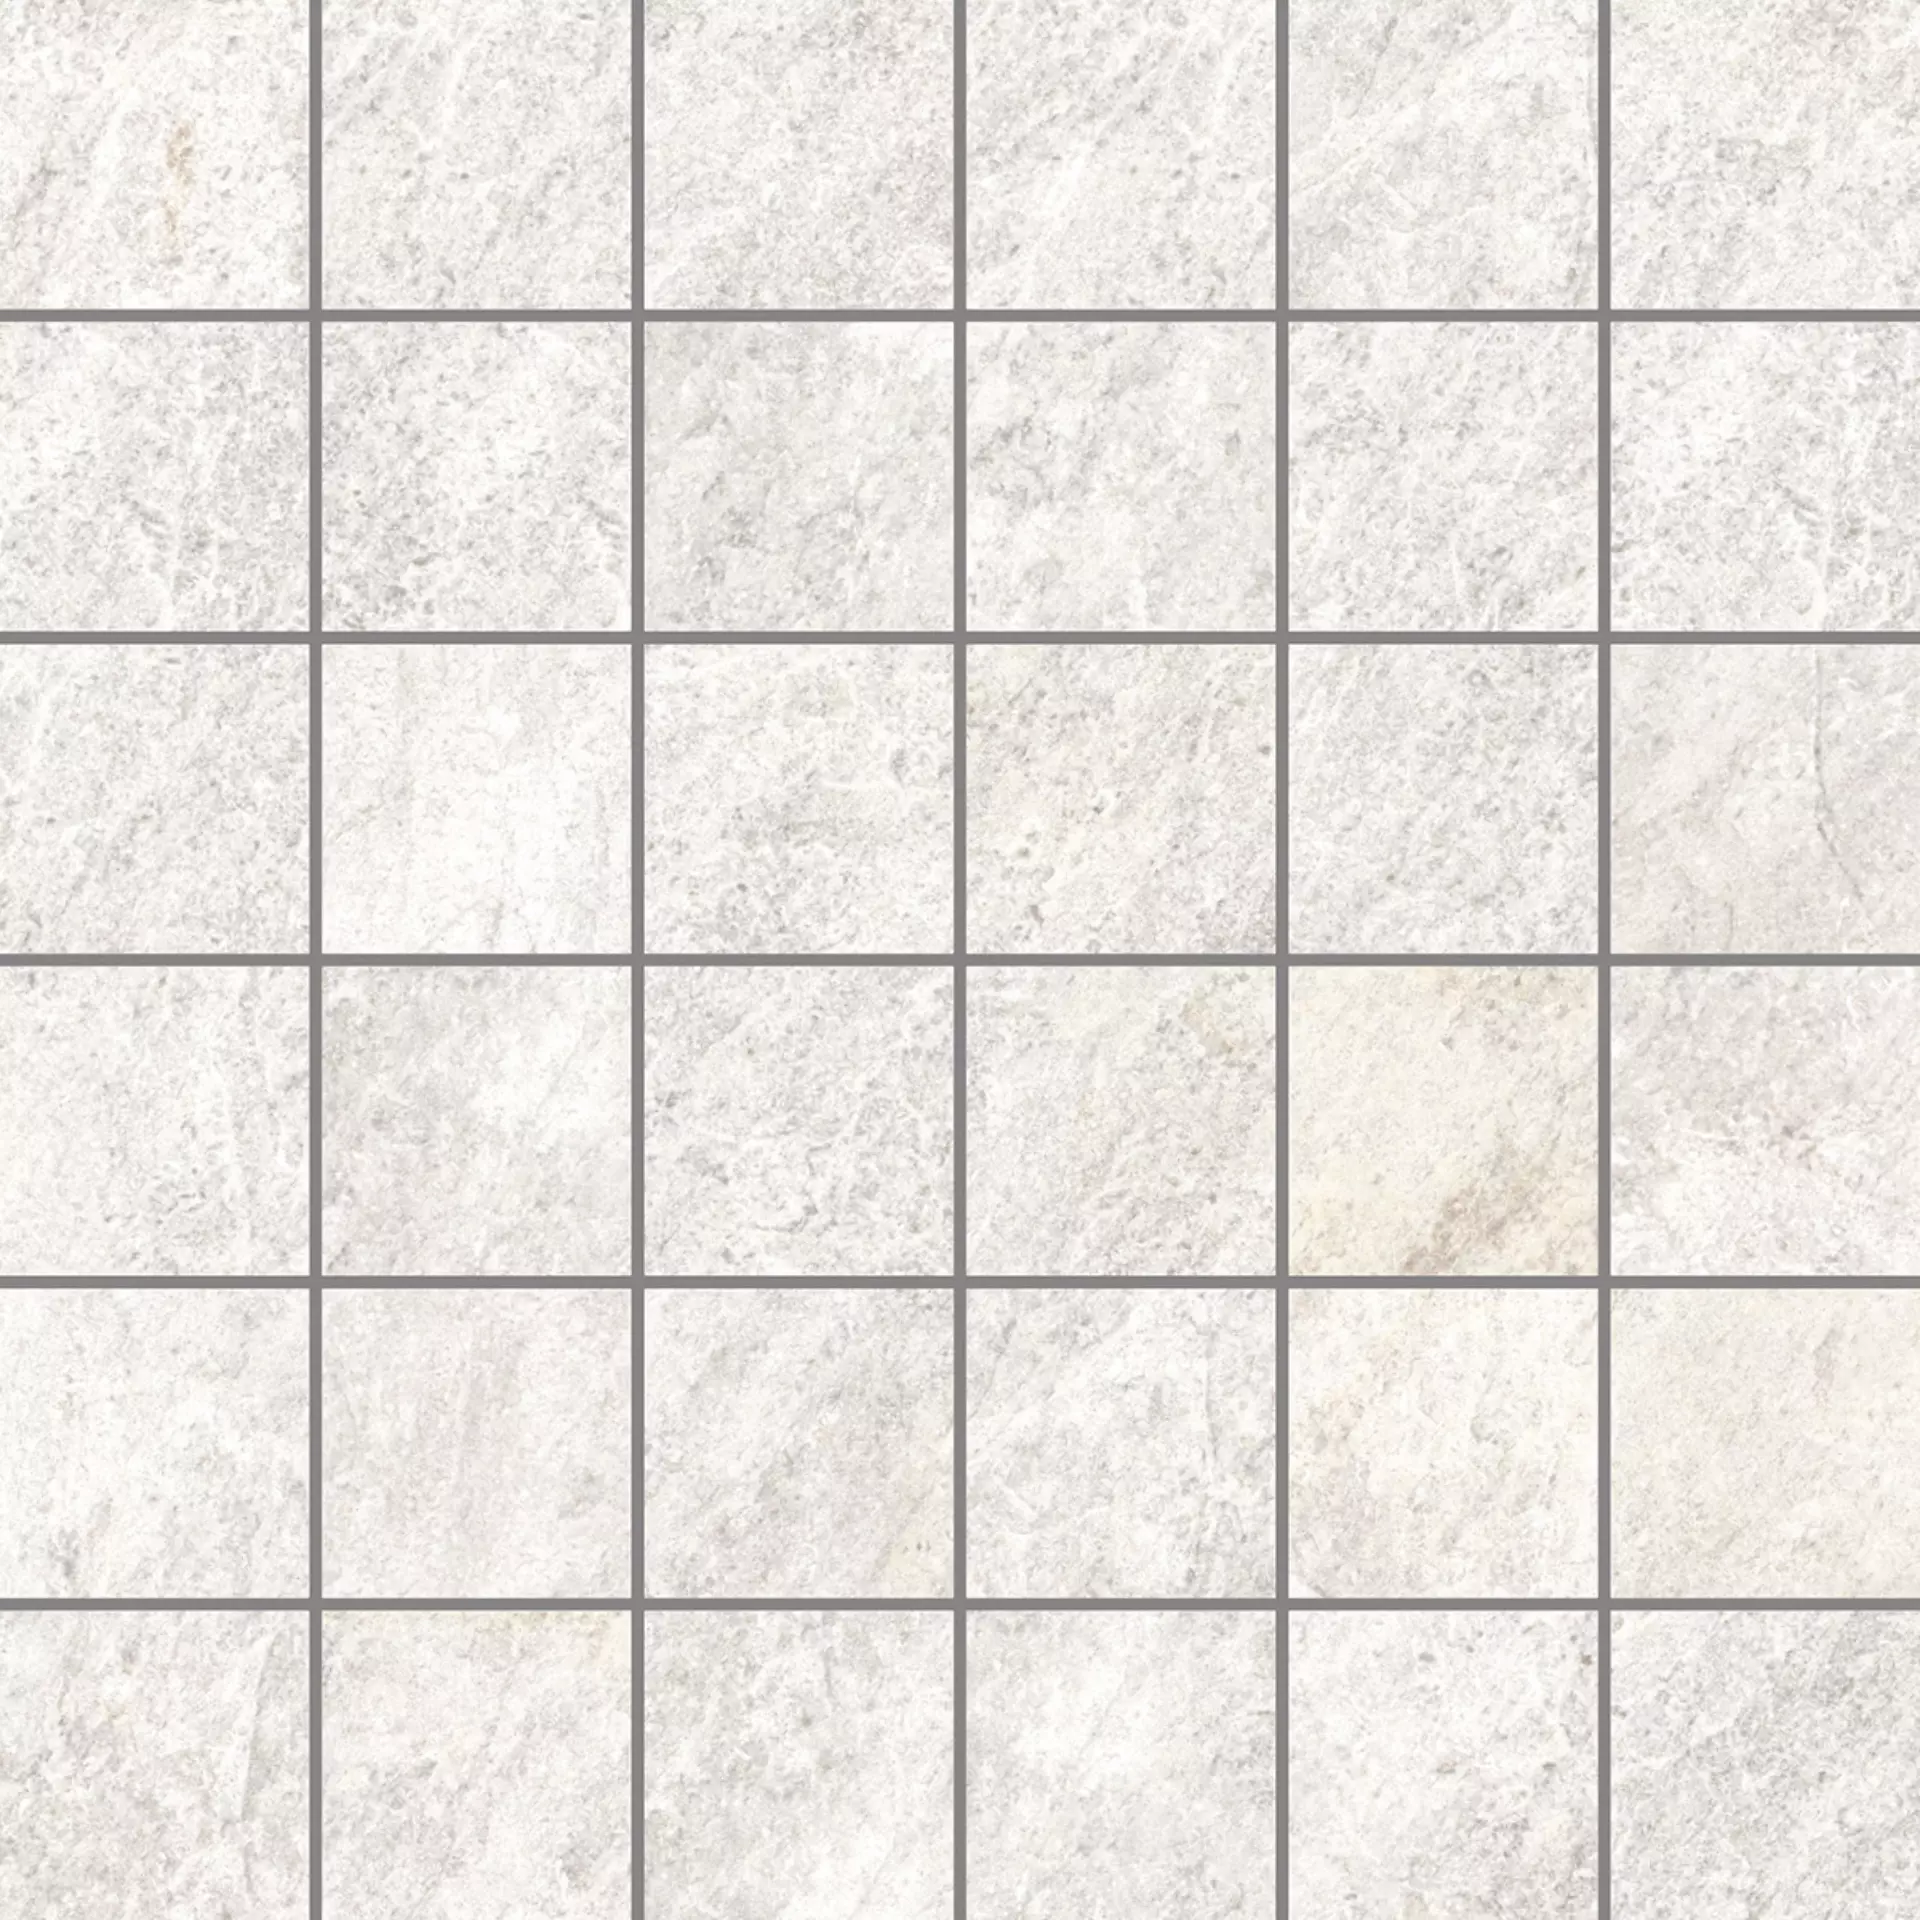 Rondine Quarzi White Naturale Mosaik J87321 30x30cm 9,5mm